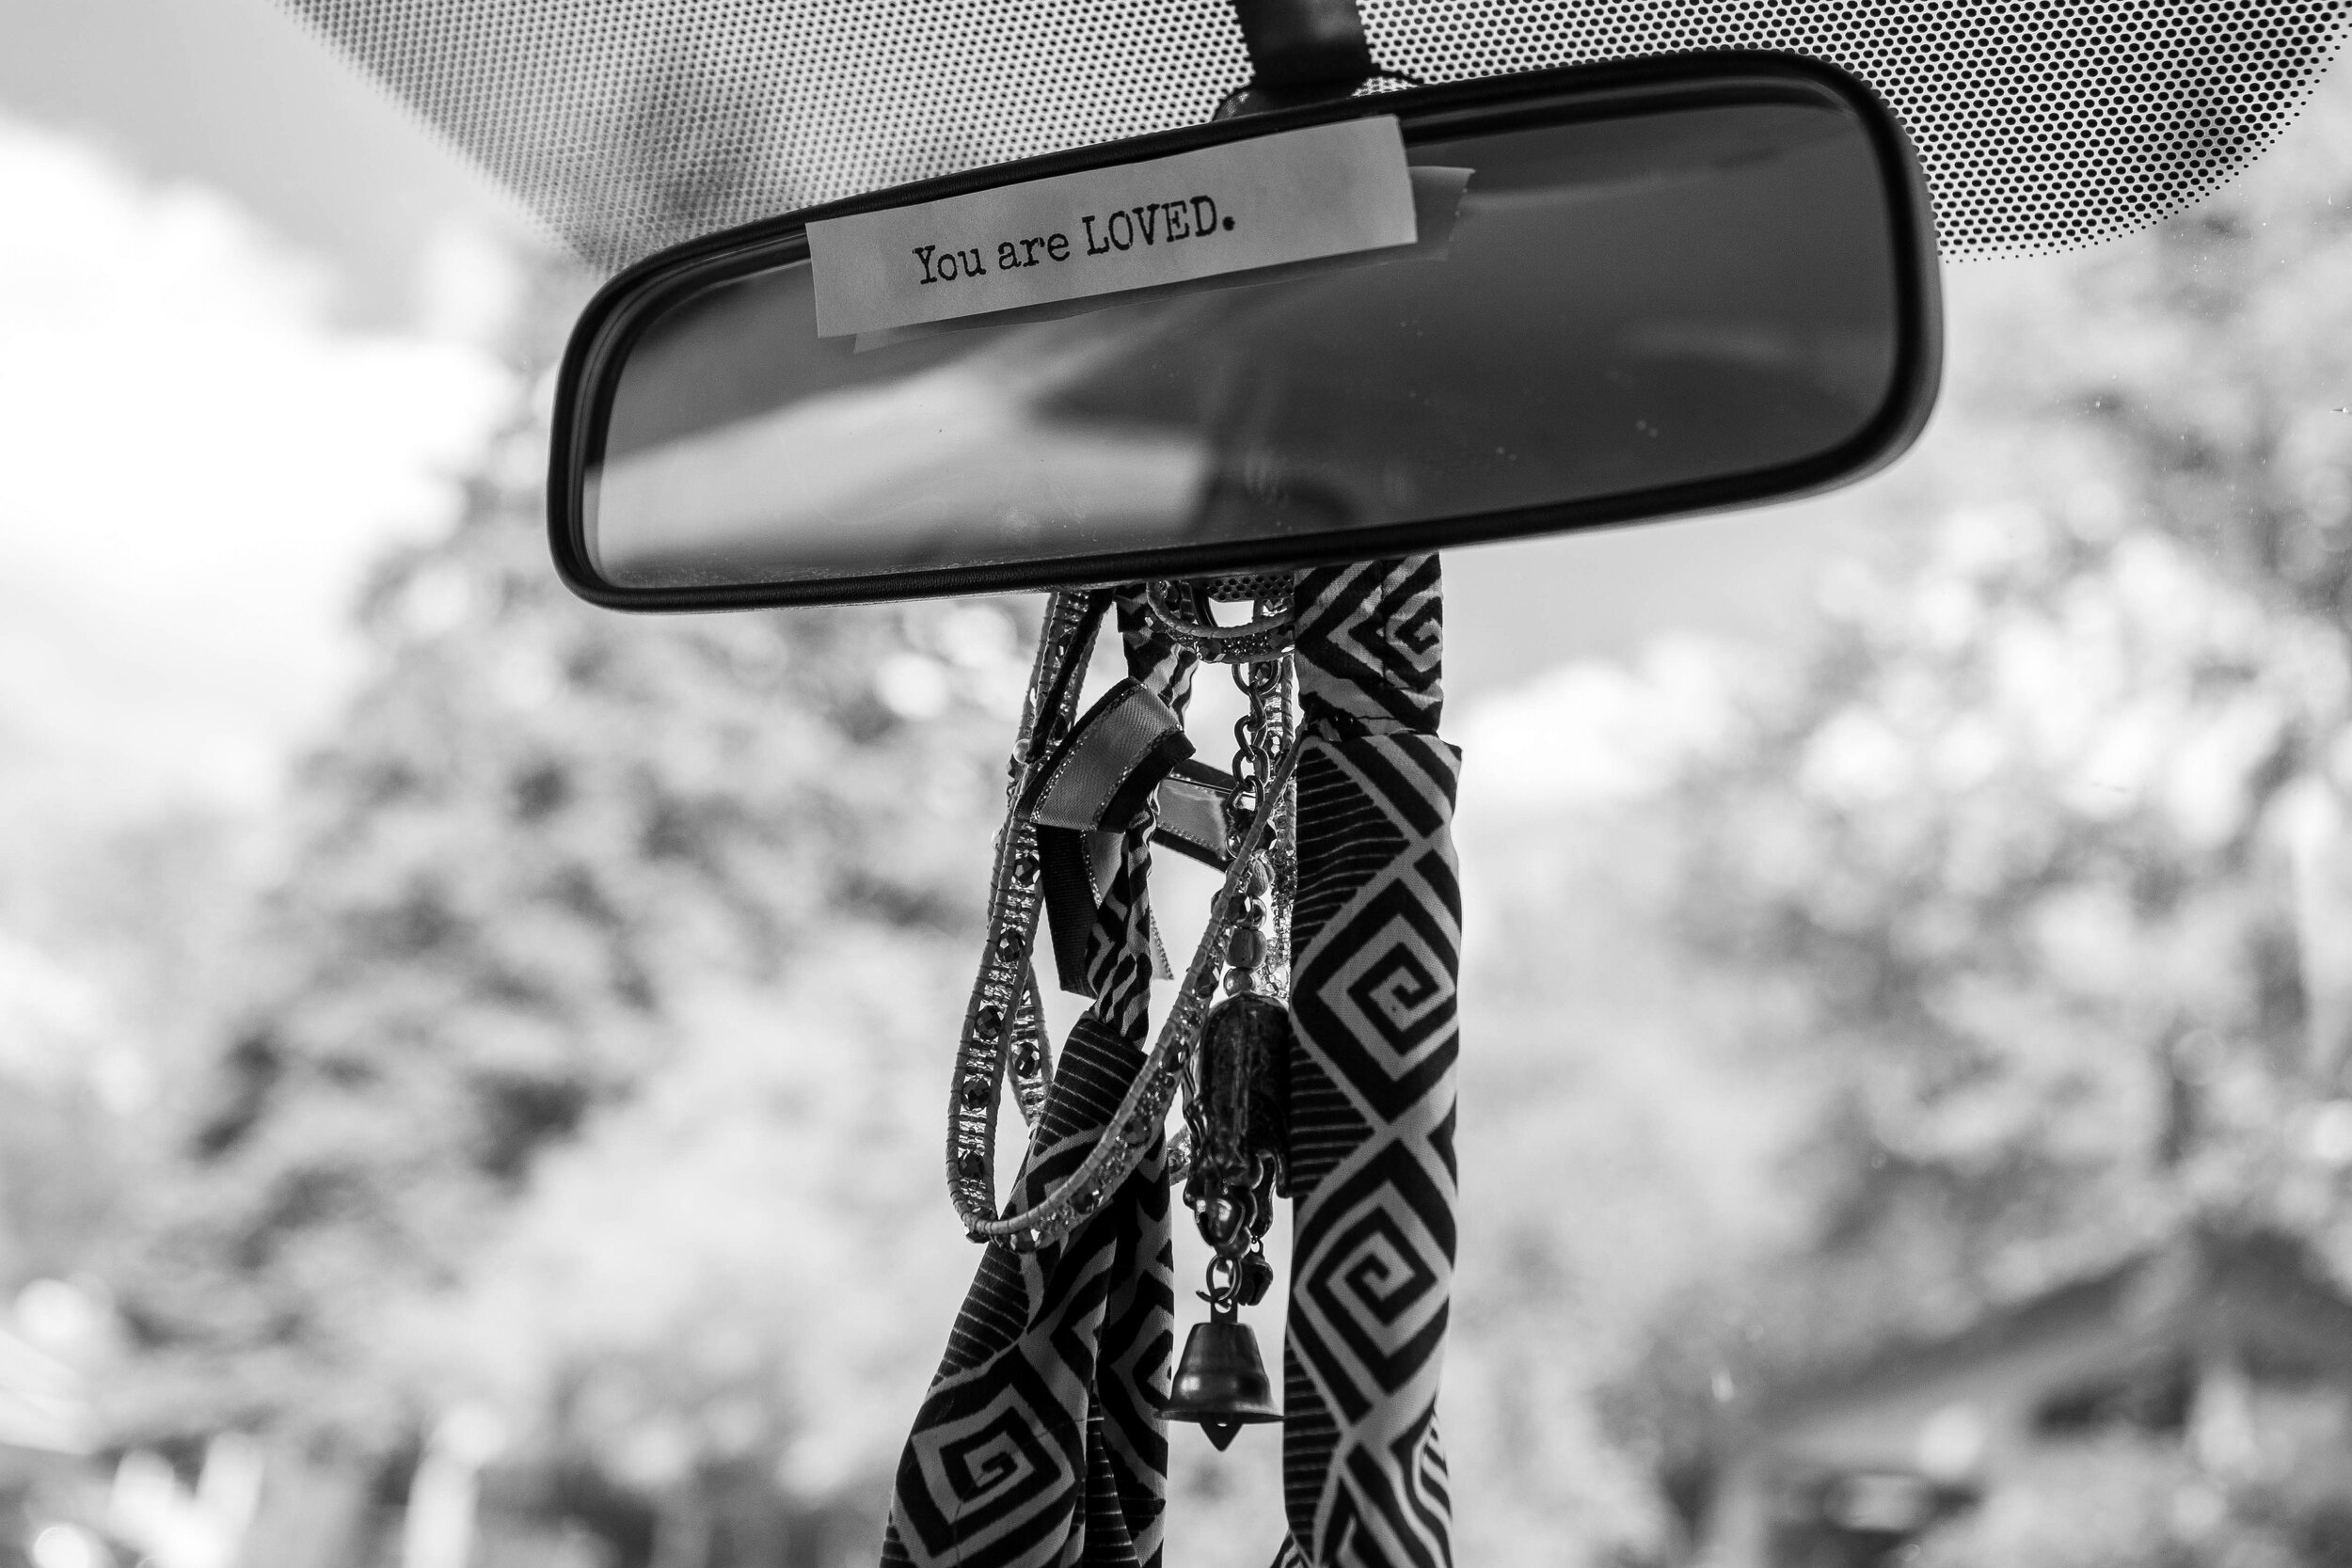  A note on Sierra’s rearview mirror. 